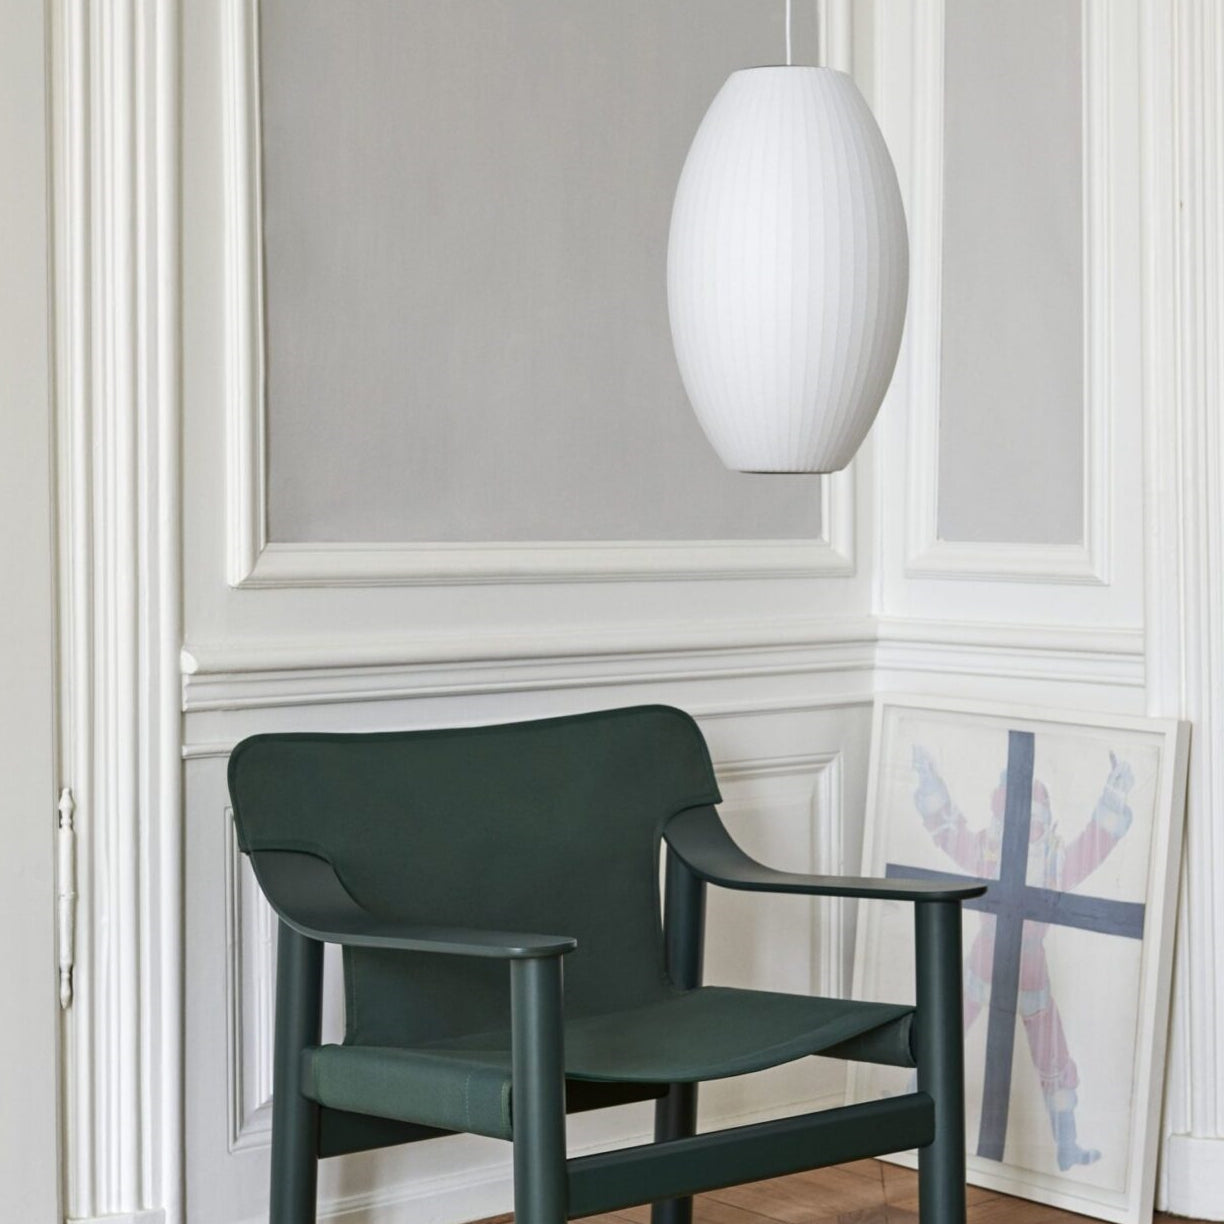 Nordic White Lantern Saucer Pendant Light For Living Room